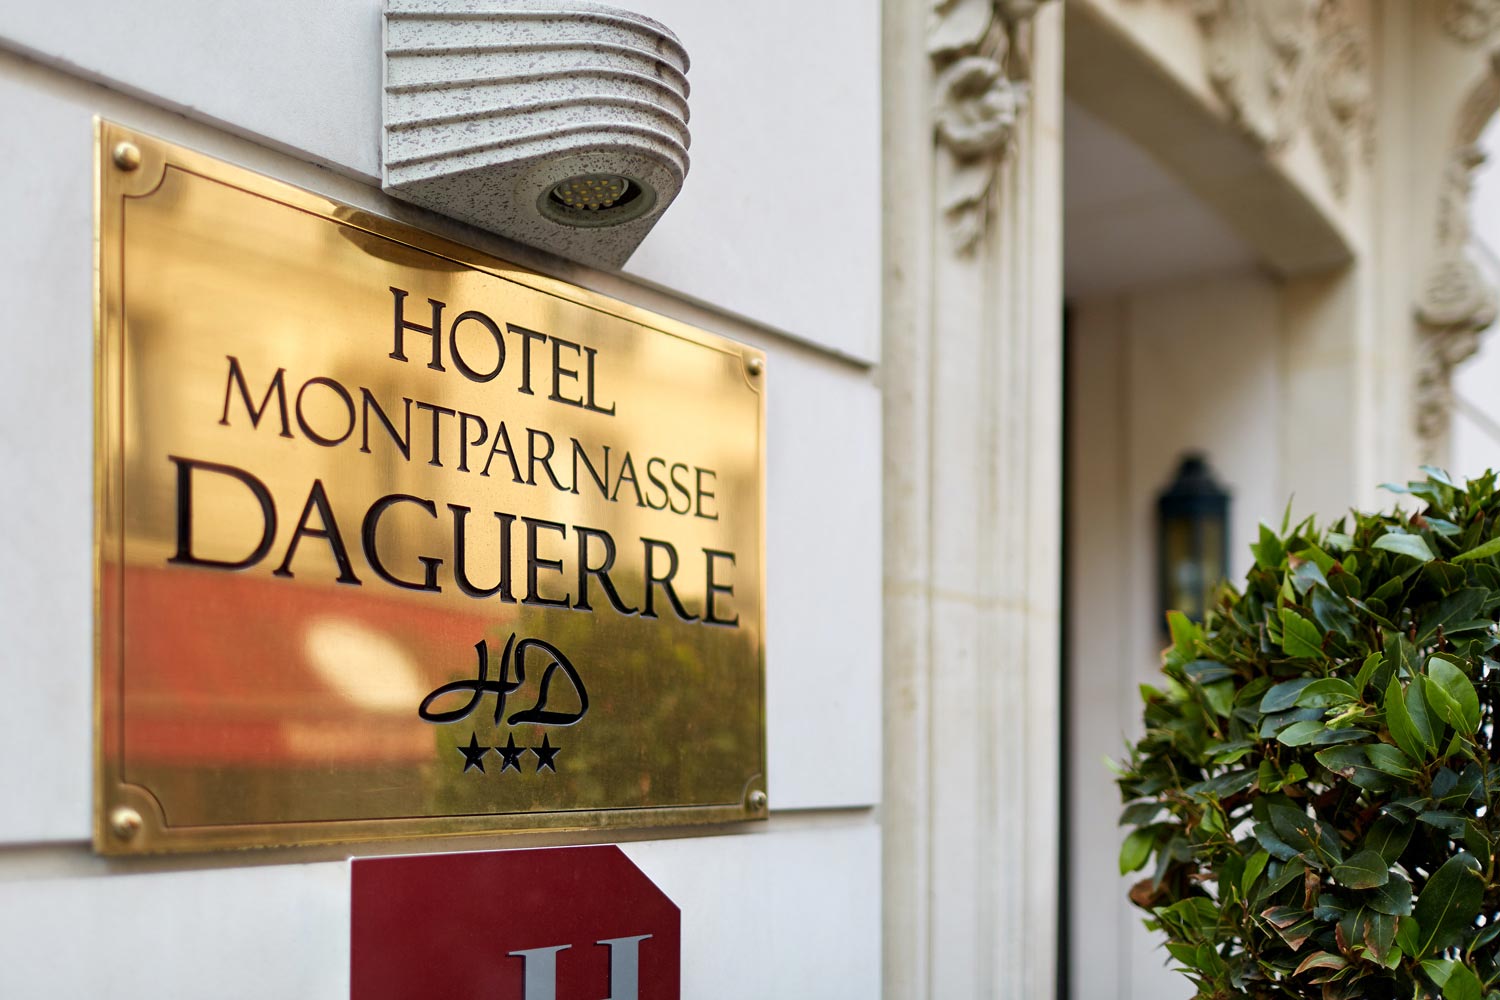 Hotel Montparnasse Daguerre | Bienvenue à l'hotel 3* Montparnasse Daguerre